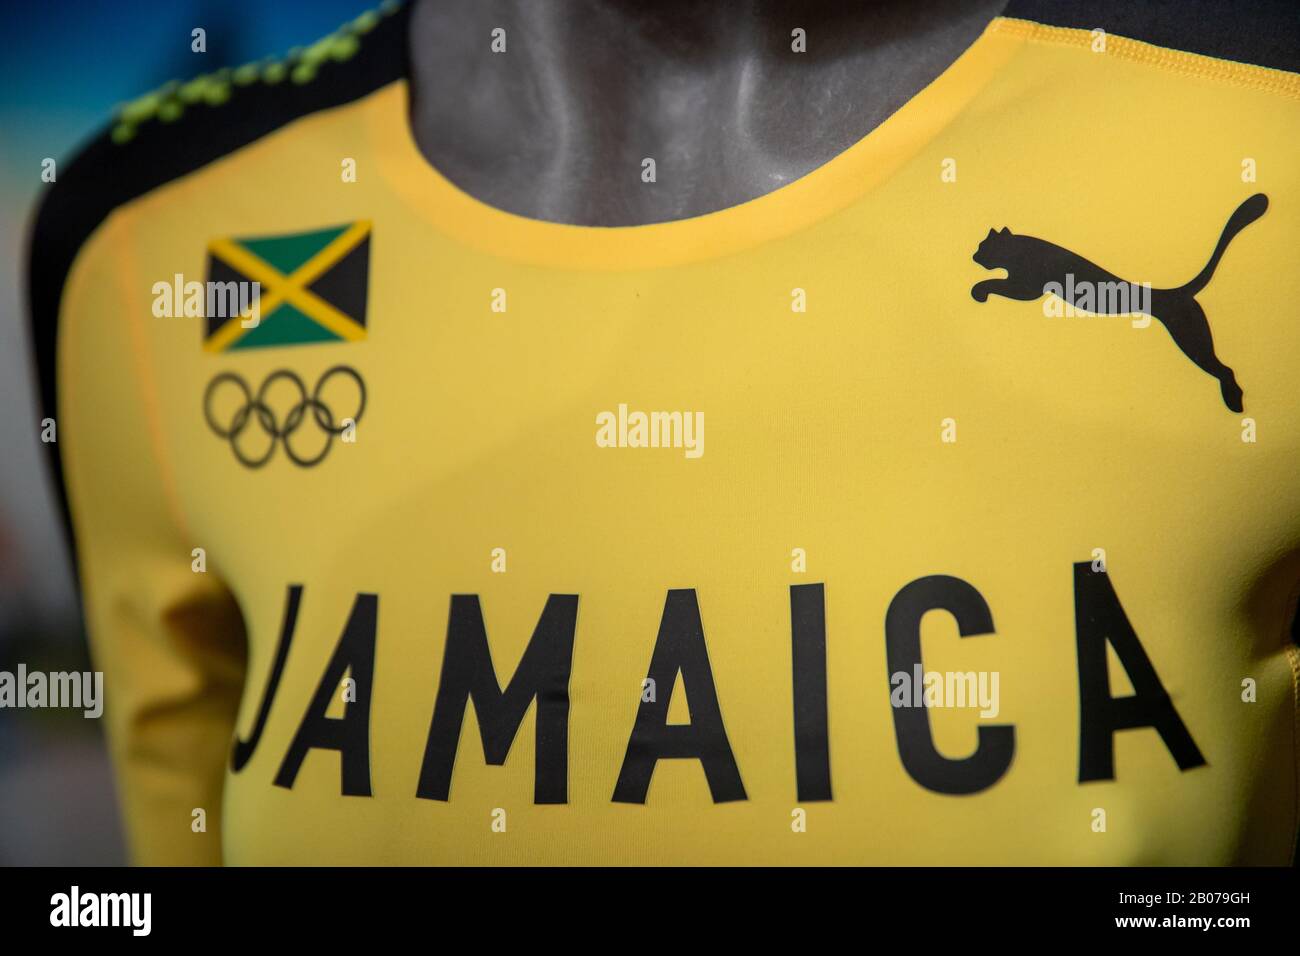 19 de febrero de 2020, Herzogenaurach: La ropa del equipo Jamaica para los próximos Juegos Olímpicos de verano de 2020 en Tokio del fabricante ropa deportiva Puma se está